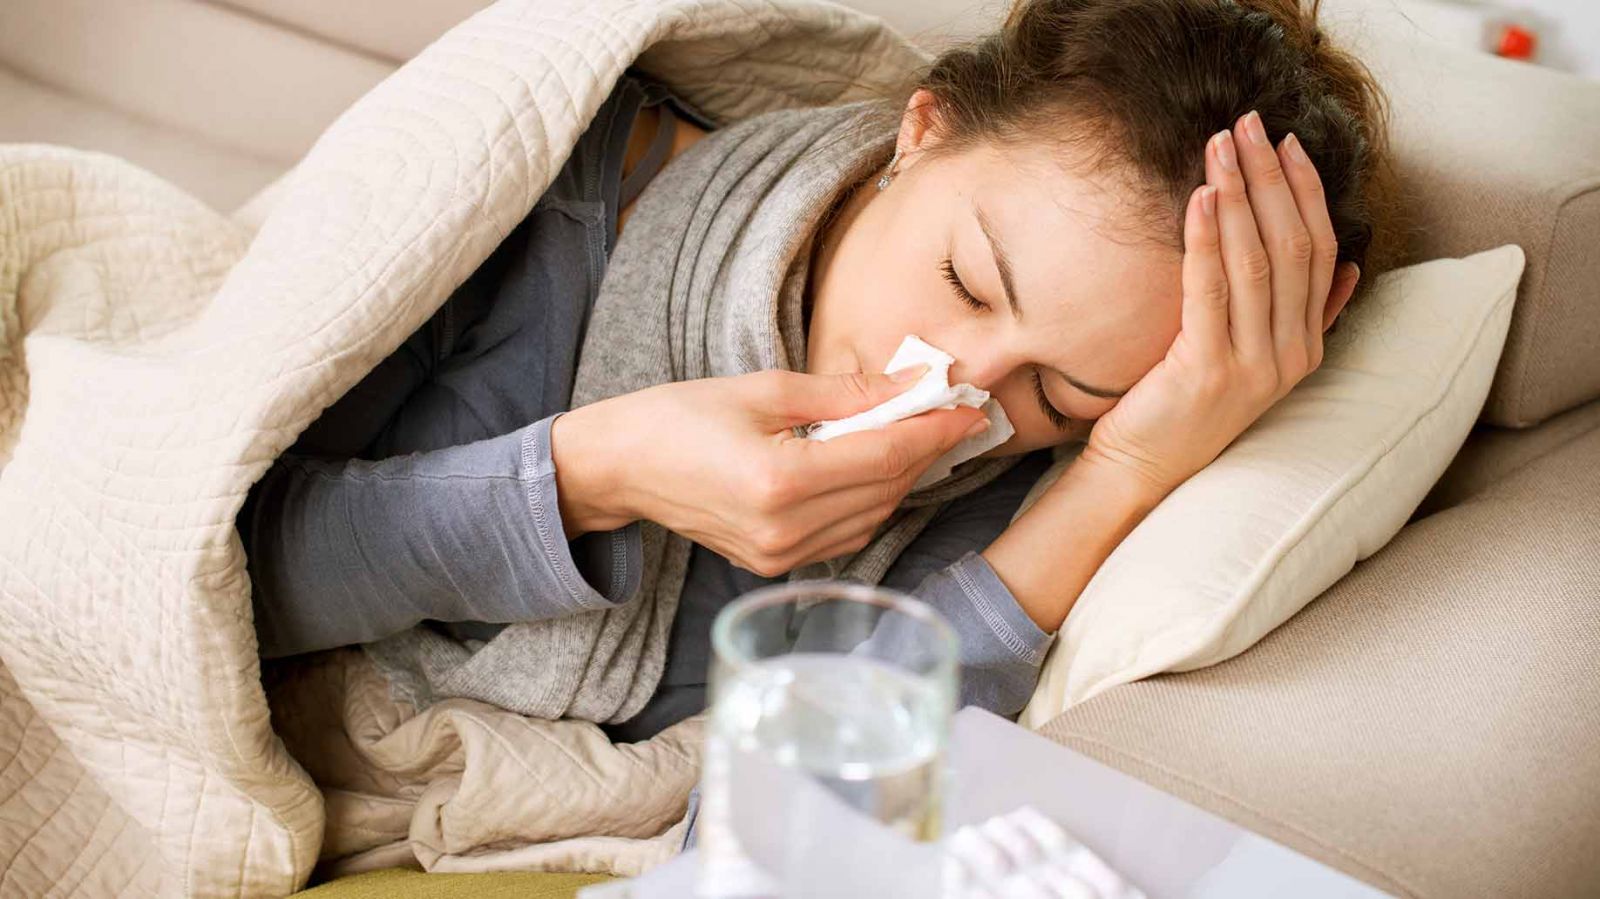 Обычная простуда проходит сама в течение трех-четырех дней